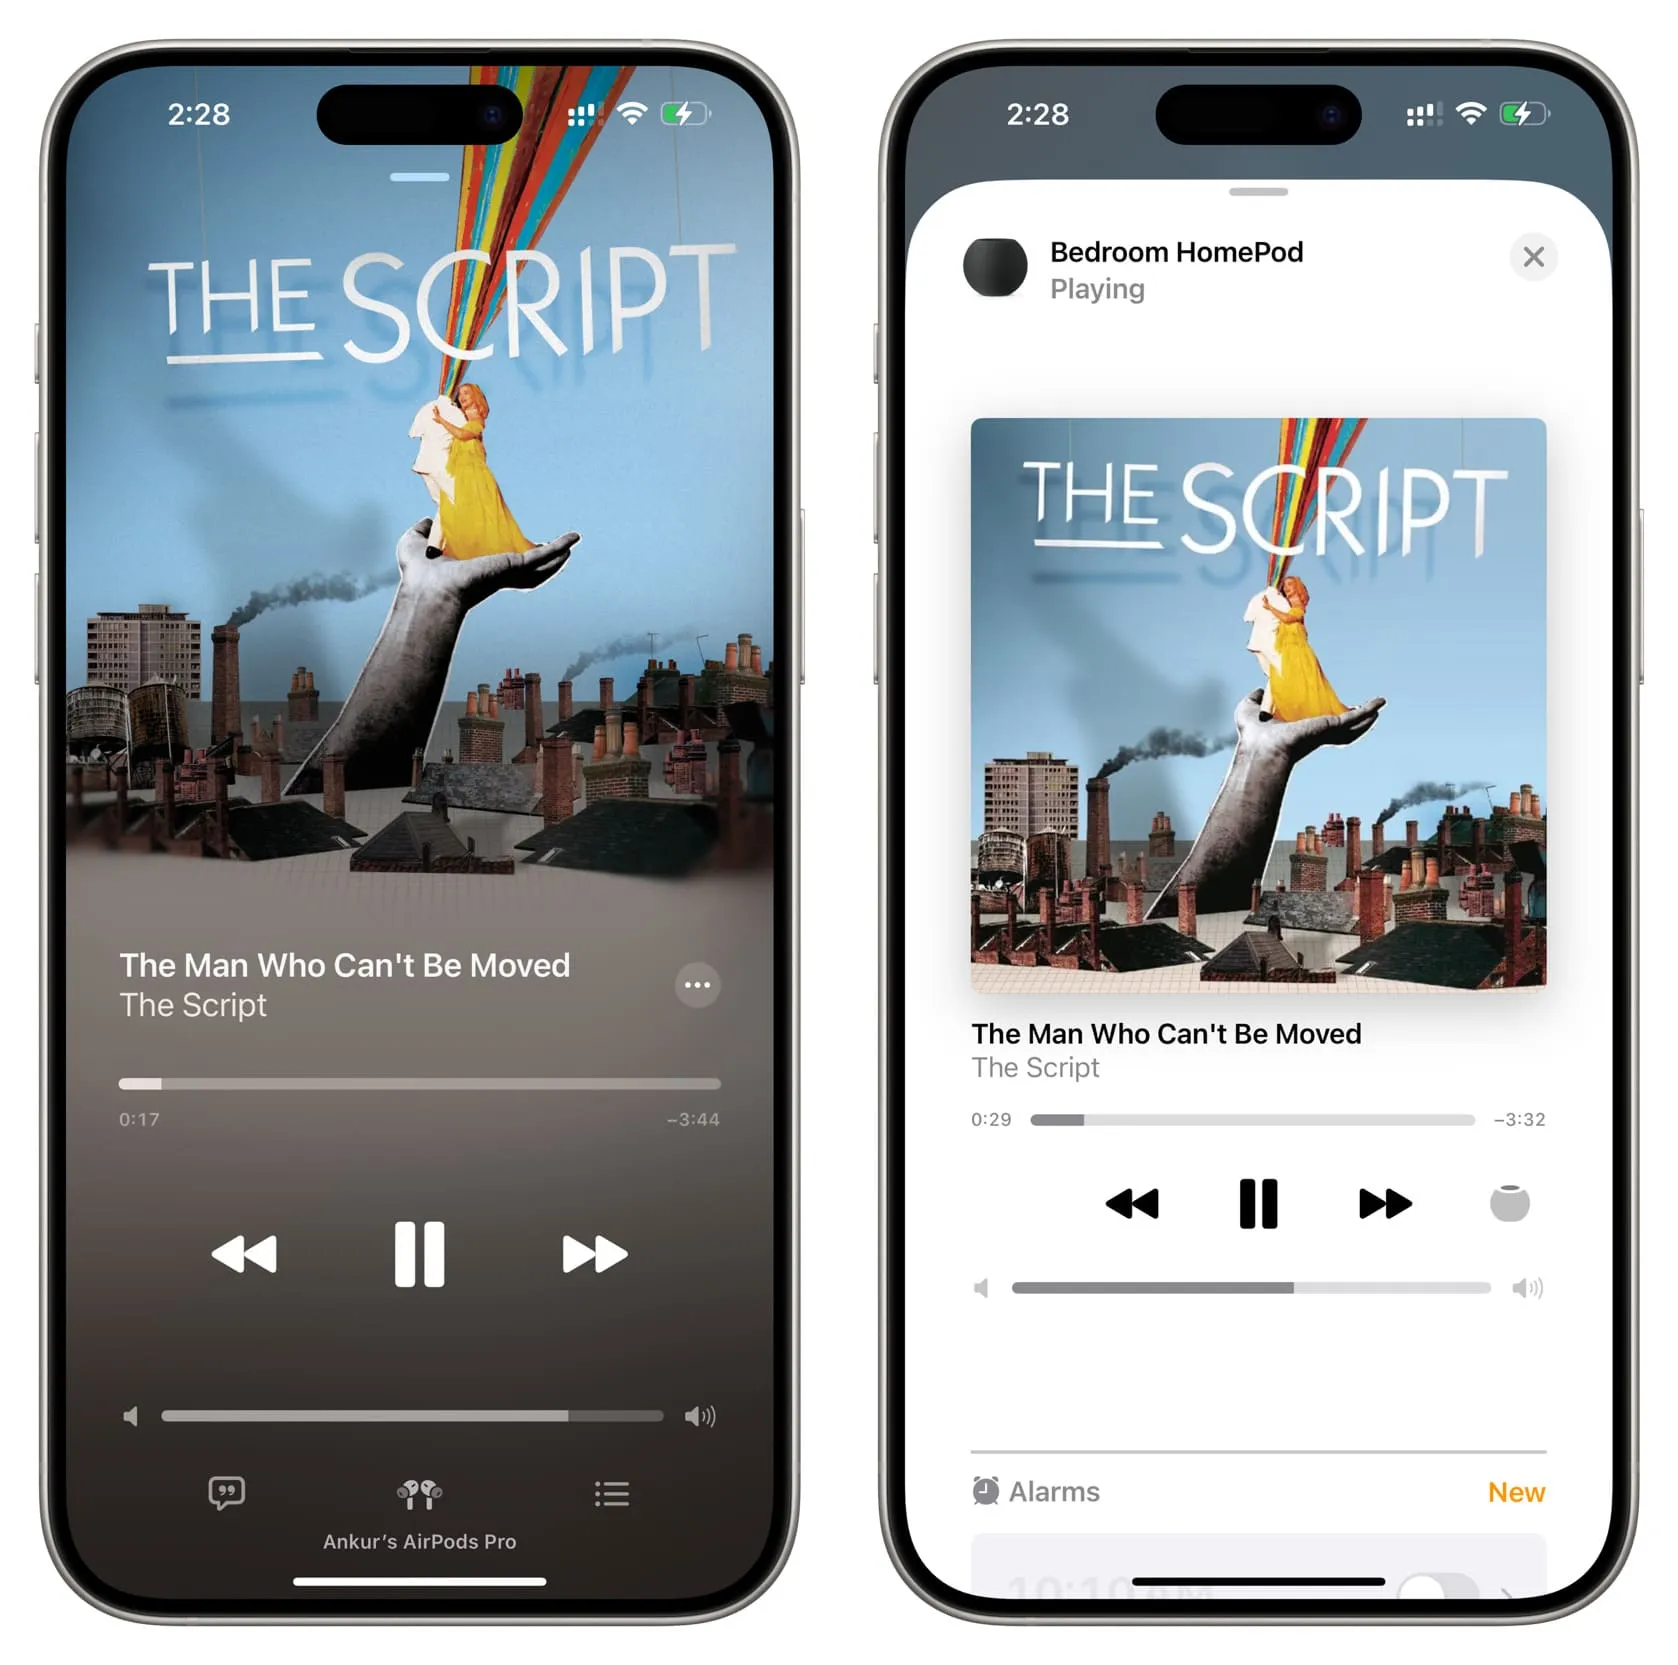 A reprodução de música foi movida automaticamente do iPhone para o HomePod